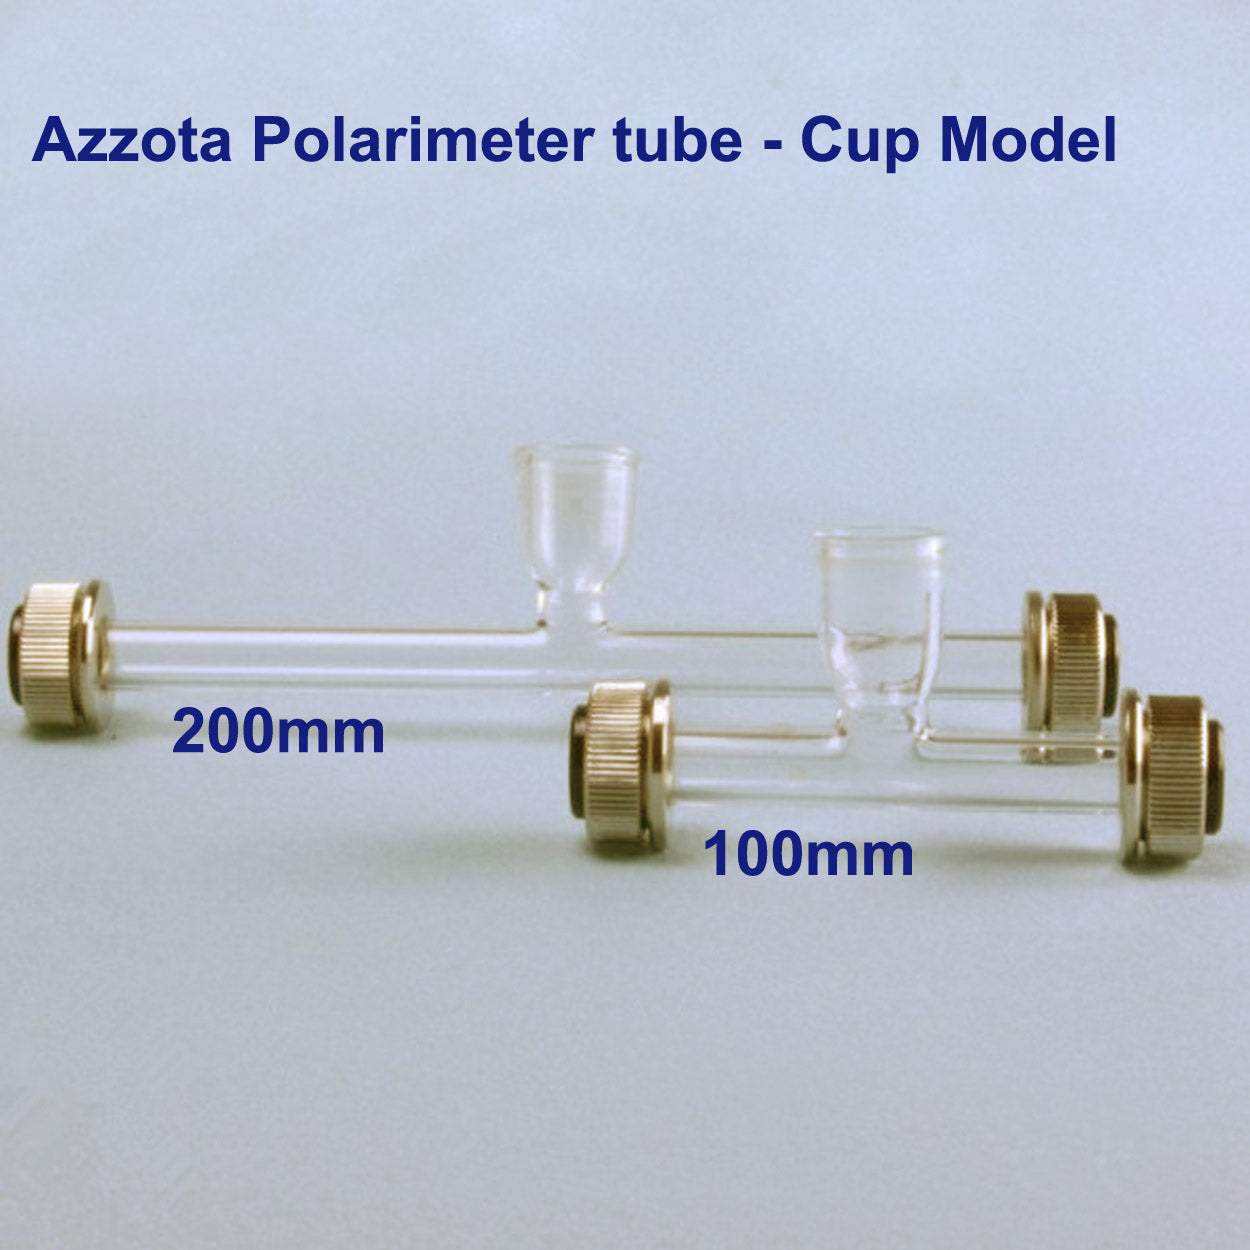 Polarimeter tube - cup model